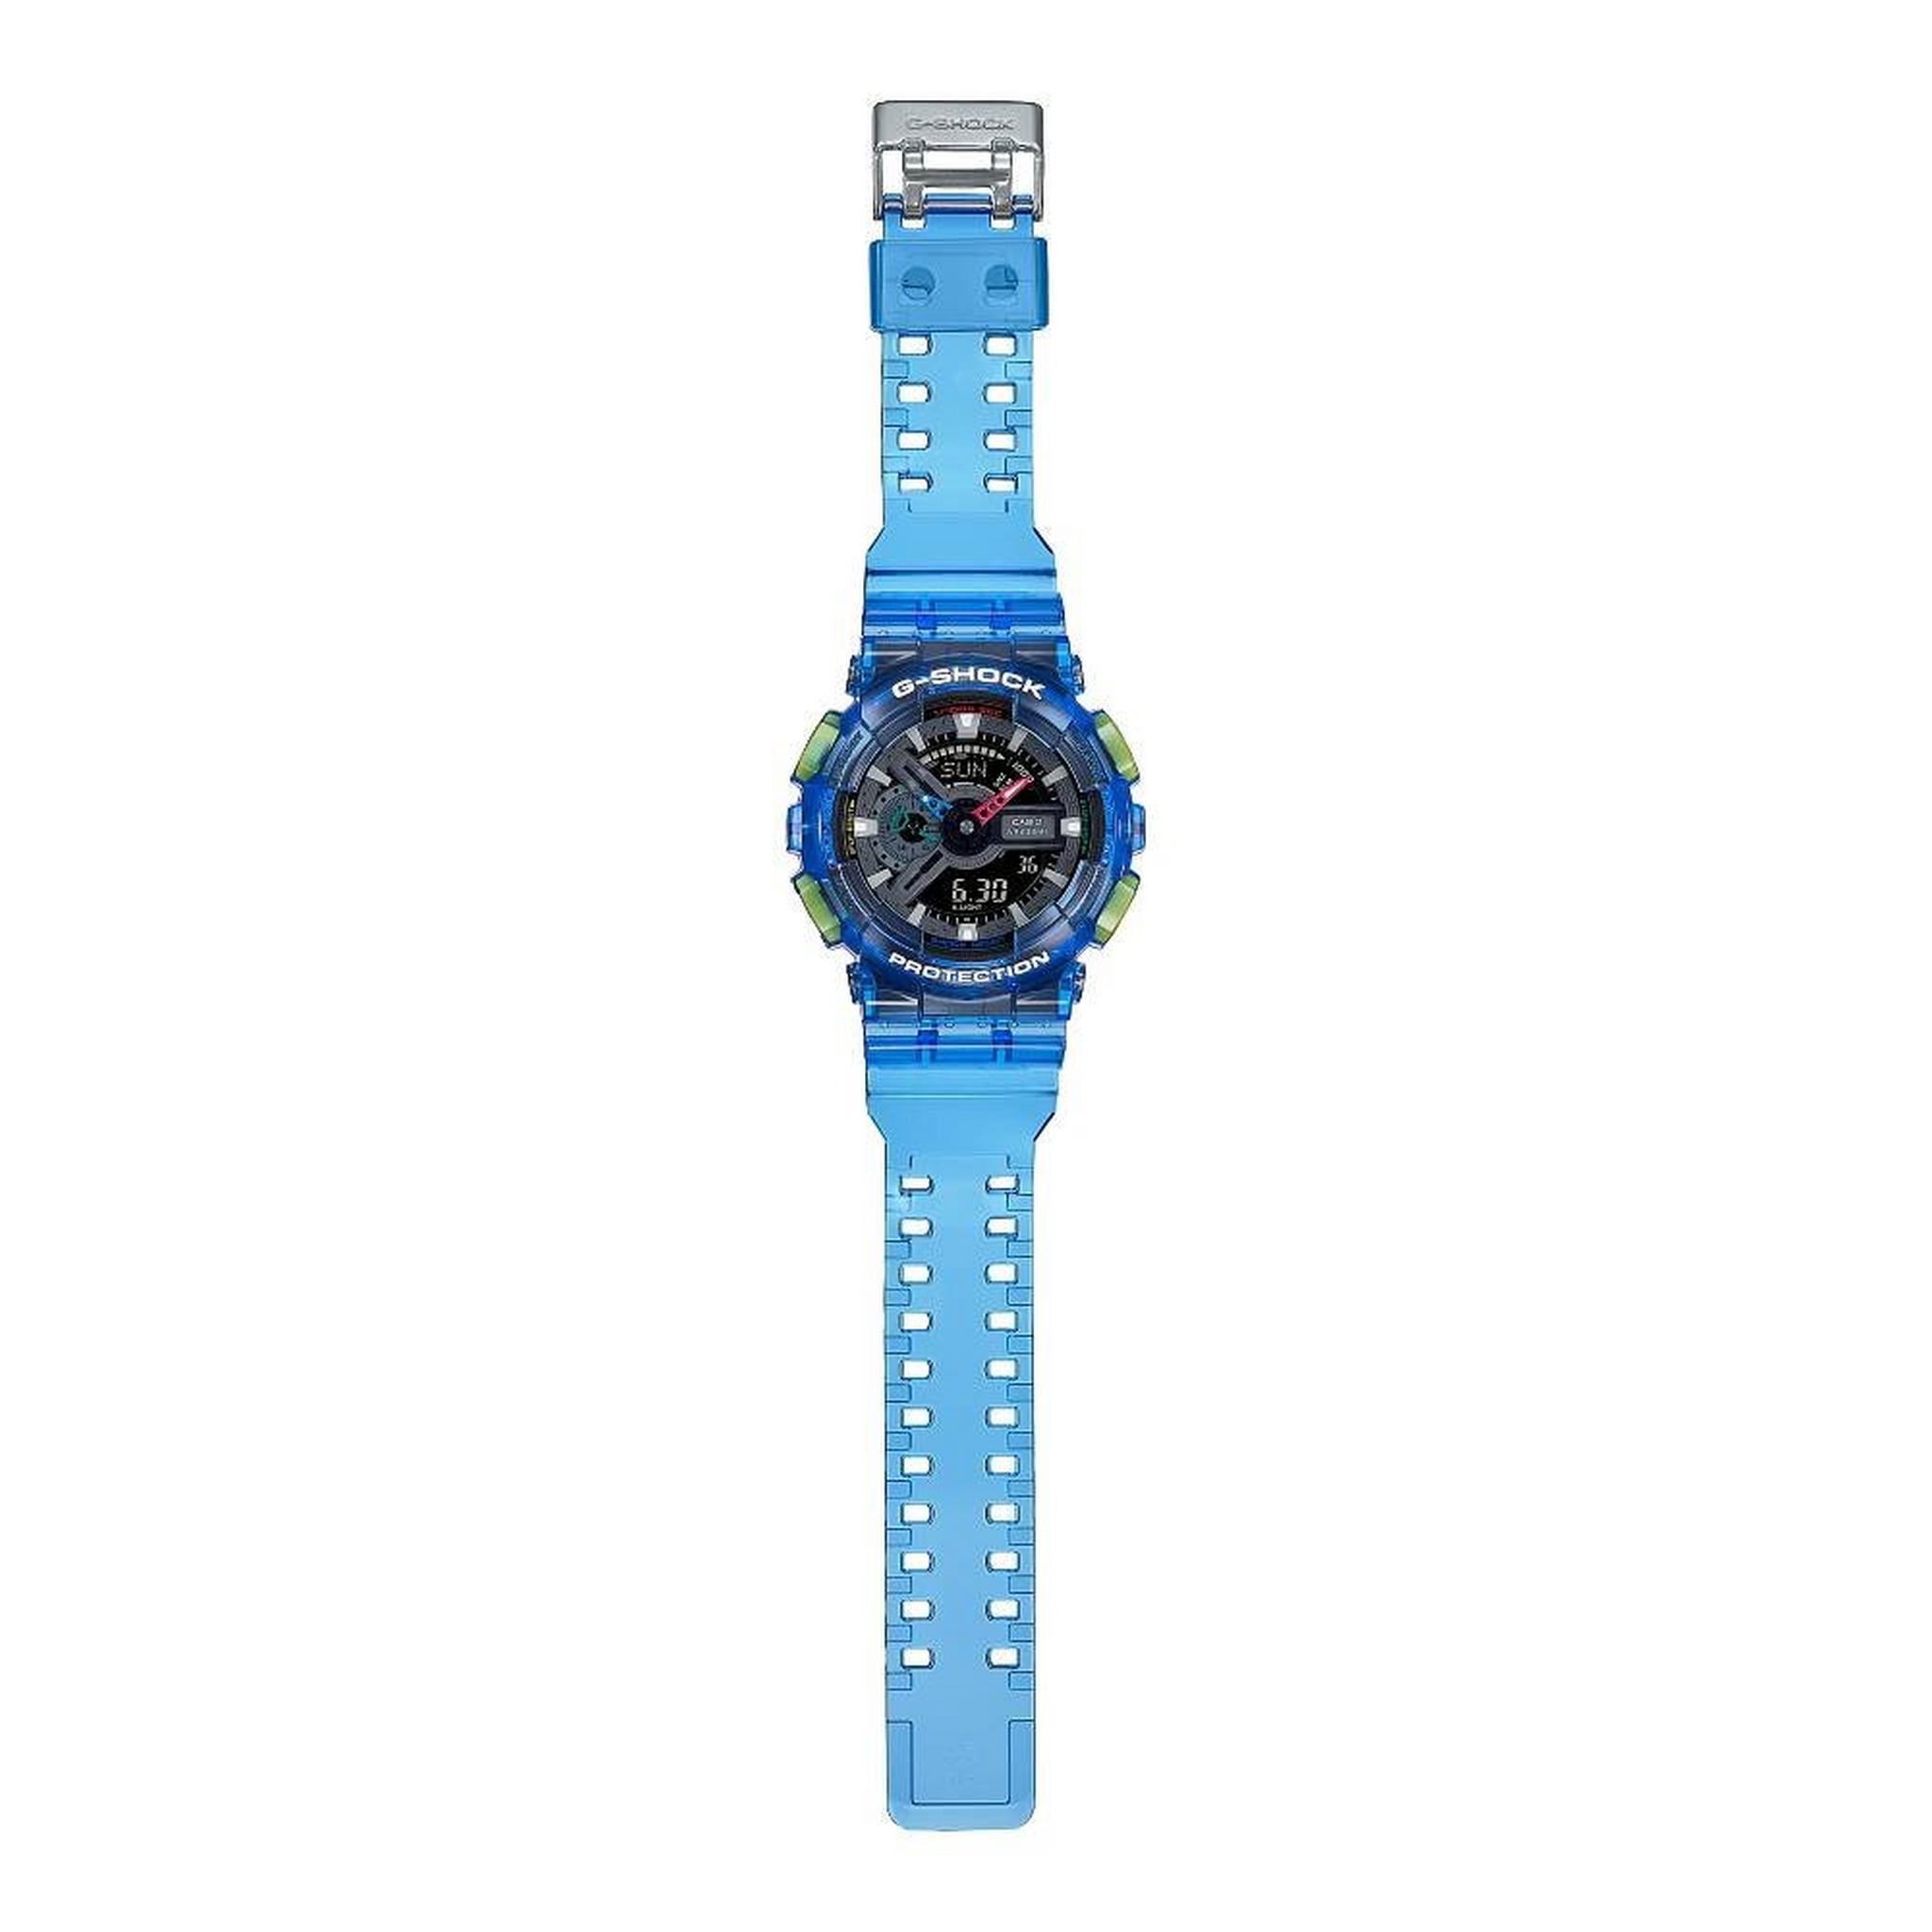 ساعة جي-شوك يوث للرجال من كاسيو ، رقمية\أنالوج، 55 مم،  GA-110JT-2ADR – أزرق